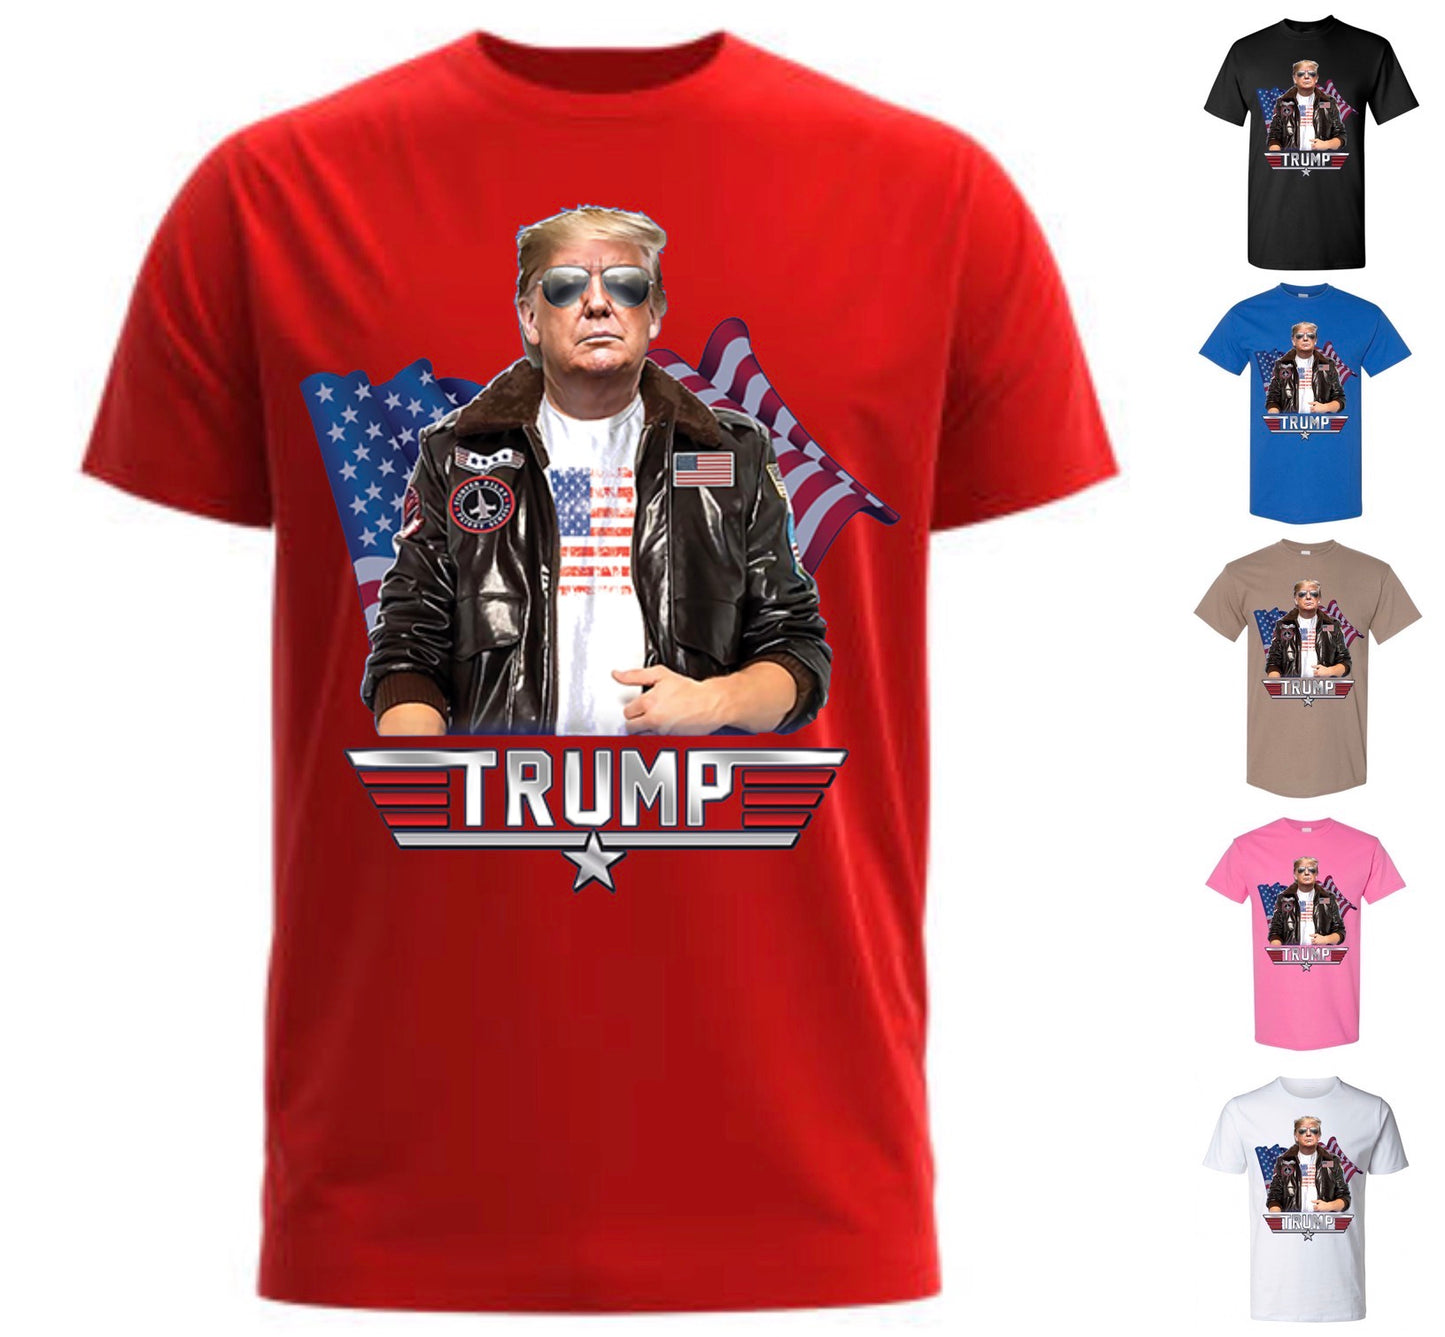 Top Gun Trump — Buy 1 Get 1 Free